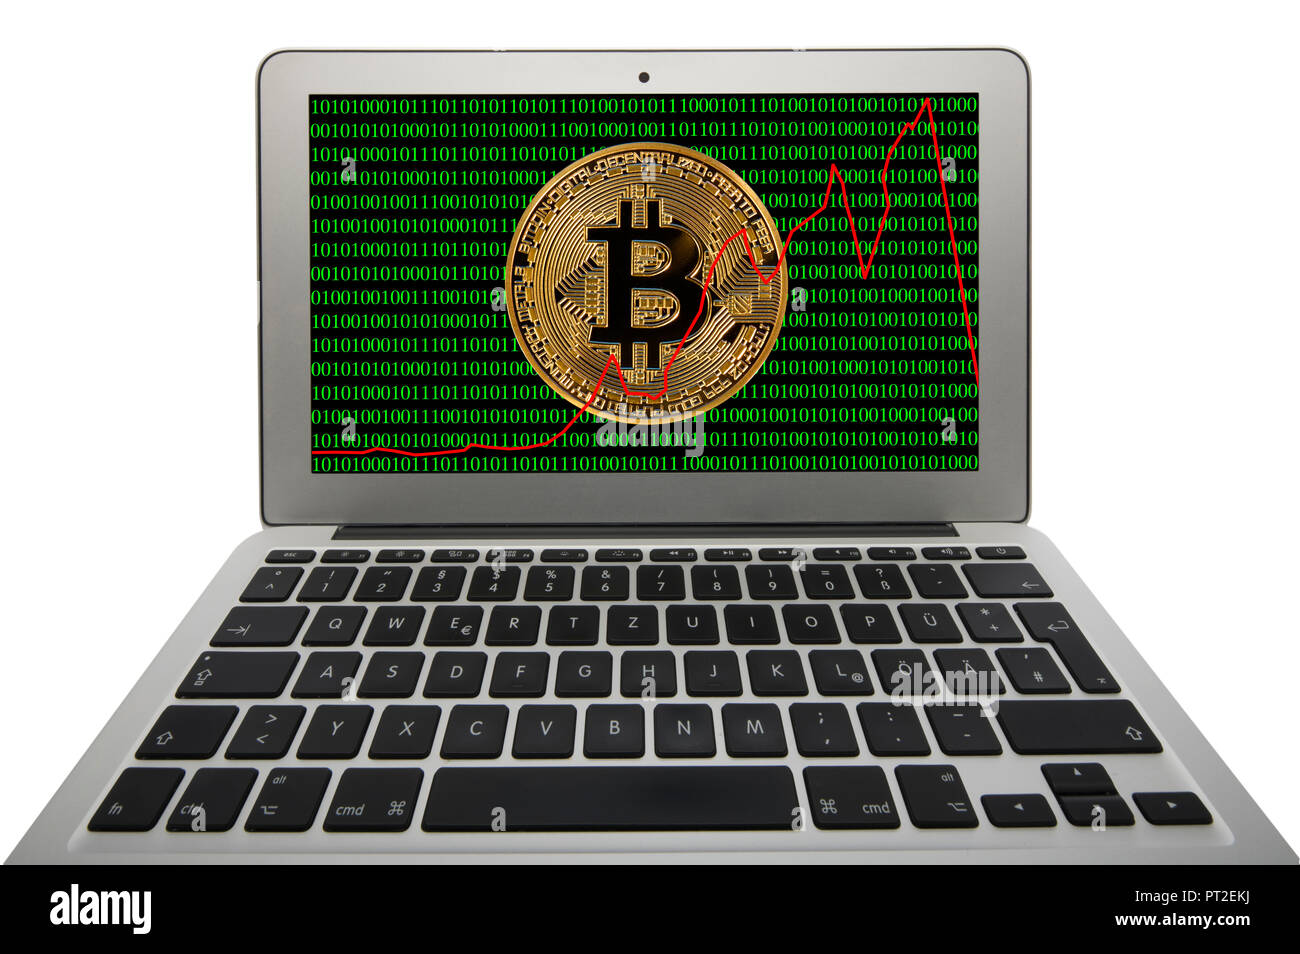 Image symbole de la turbulence, de la volatilité, de l'action de la monnaie numérique, golden coins physique numérique portable avec Bitcoin code binaire Banque D'Images